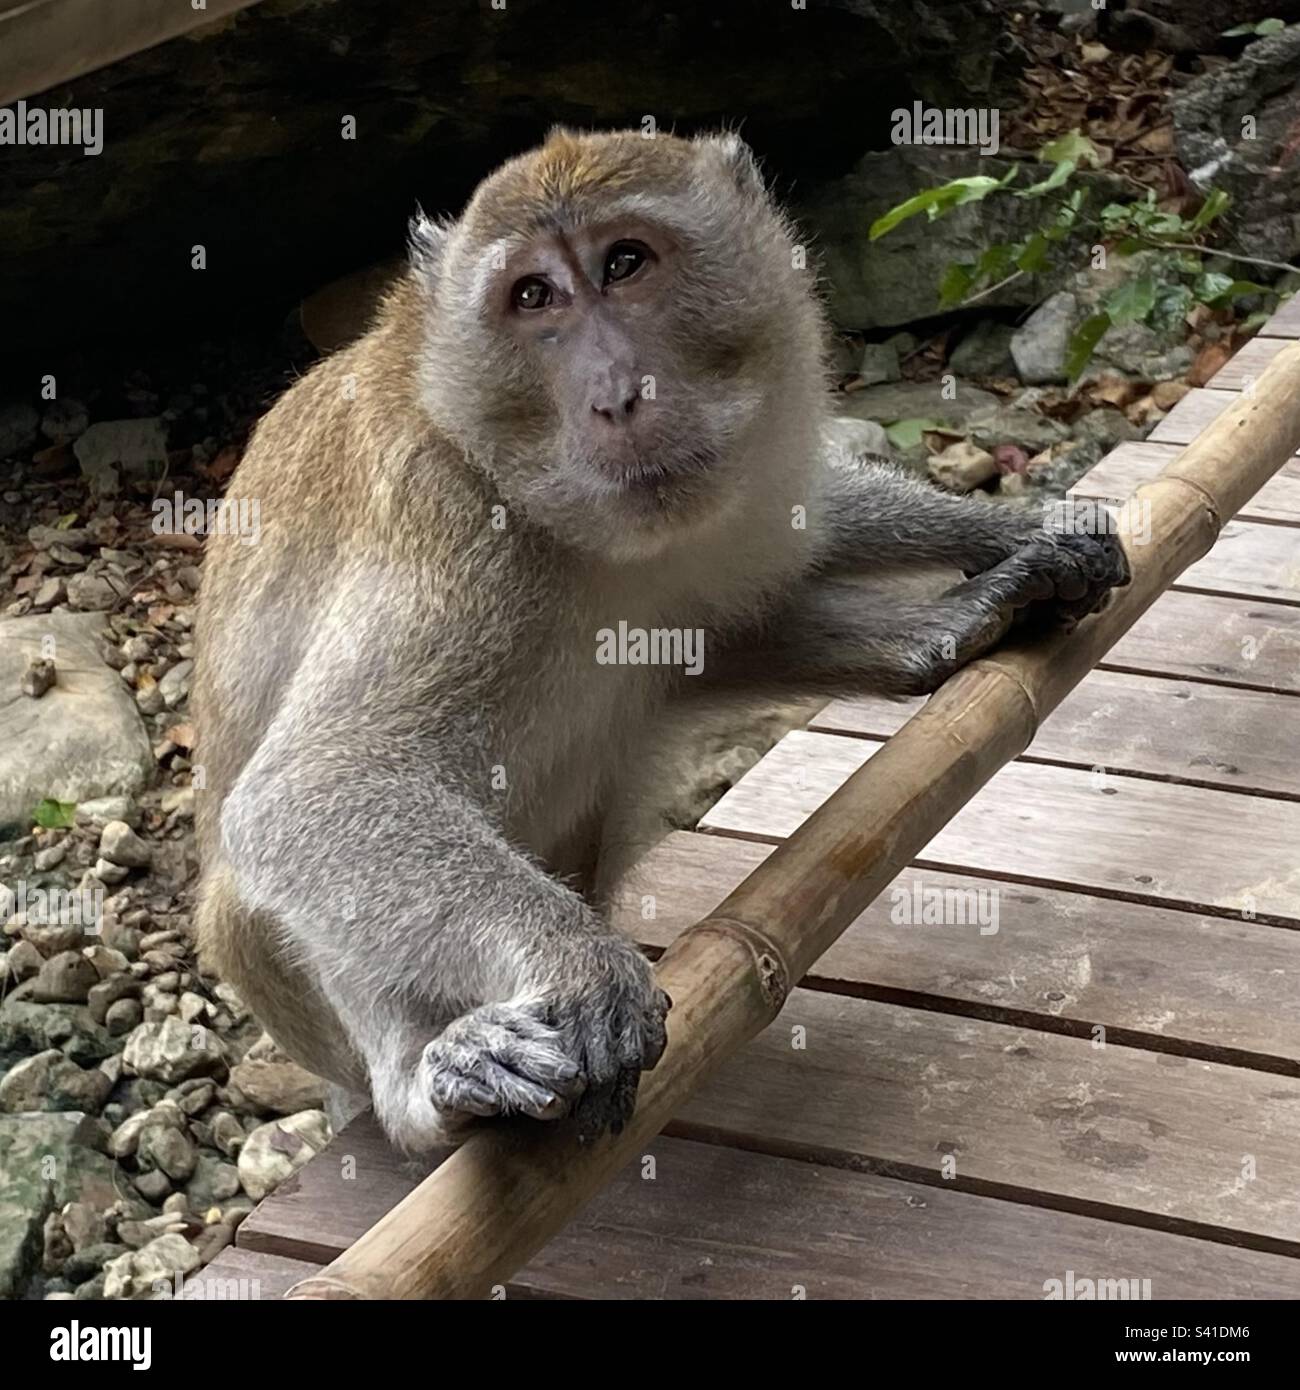 A macaque monkey in Ao Nang, Krabi, Thailand Stock Photo